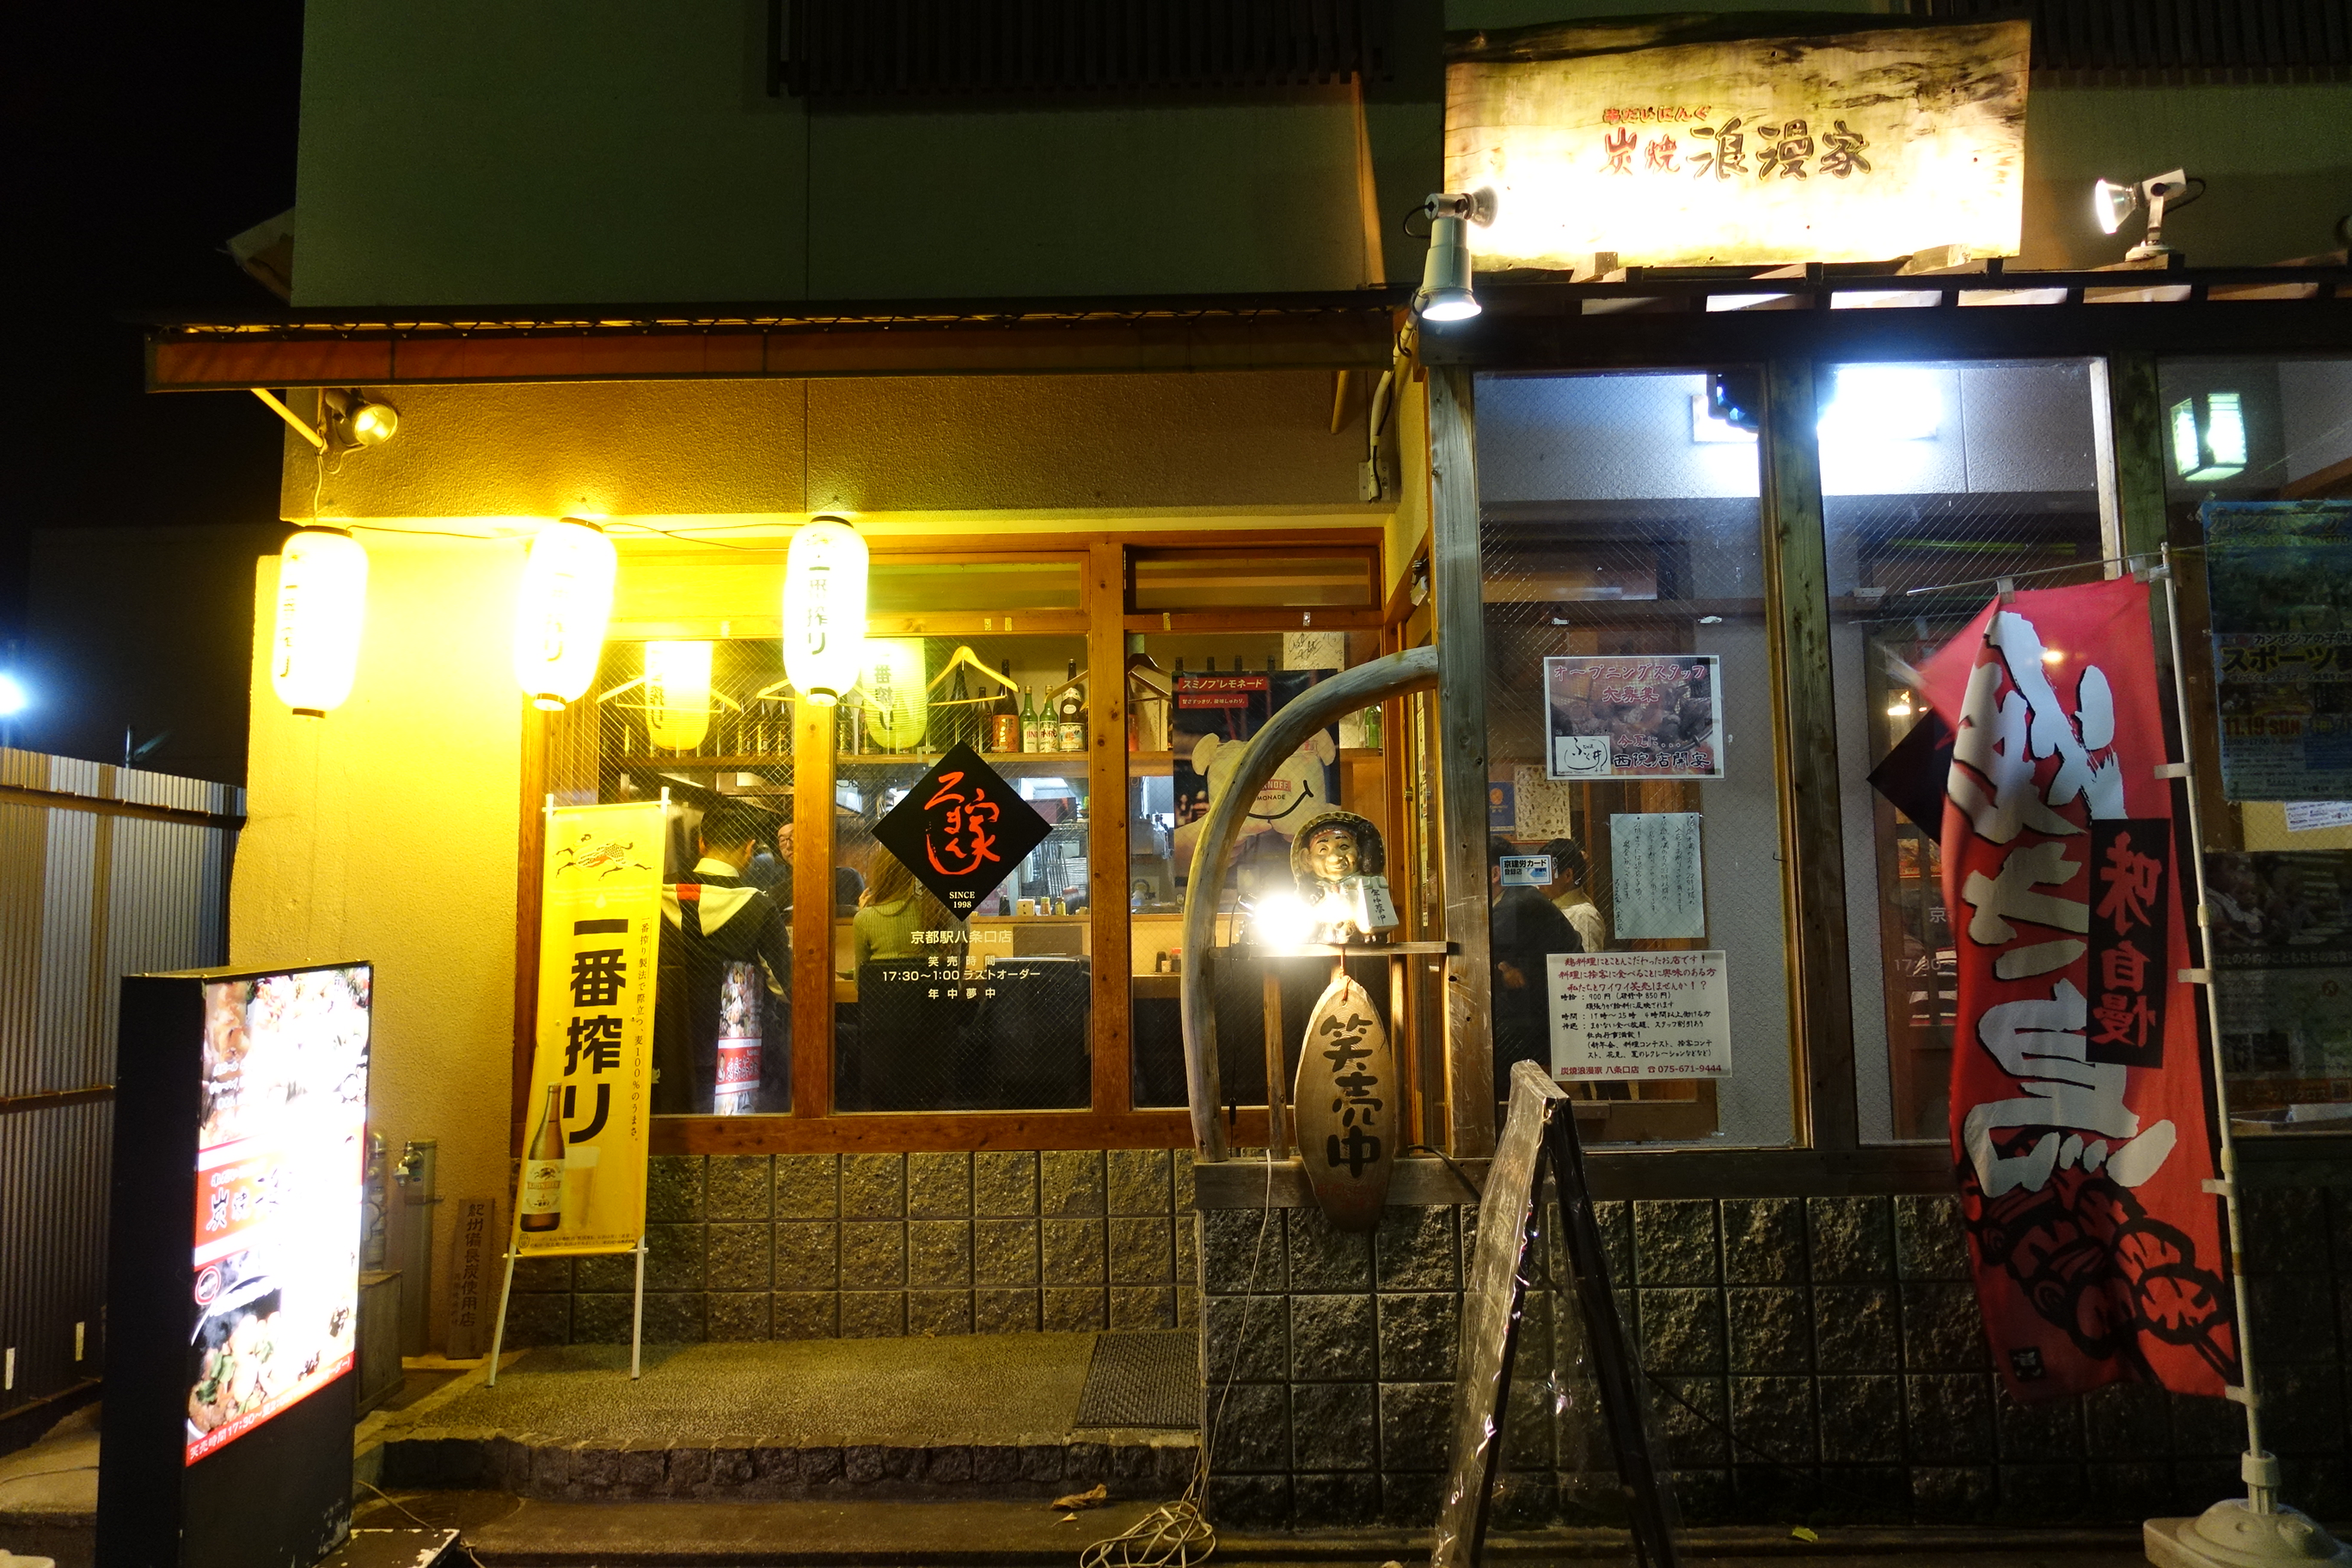 【京都居酒屋】浪漫家居酒屋,京都車站附近宵夜,串燒美味氣氛佳 @小環妞 幸福足跡